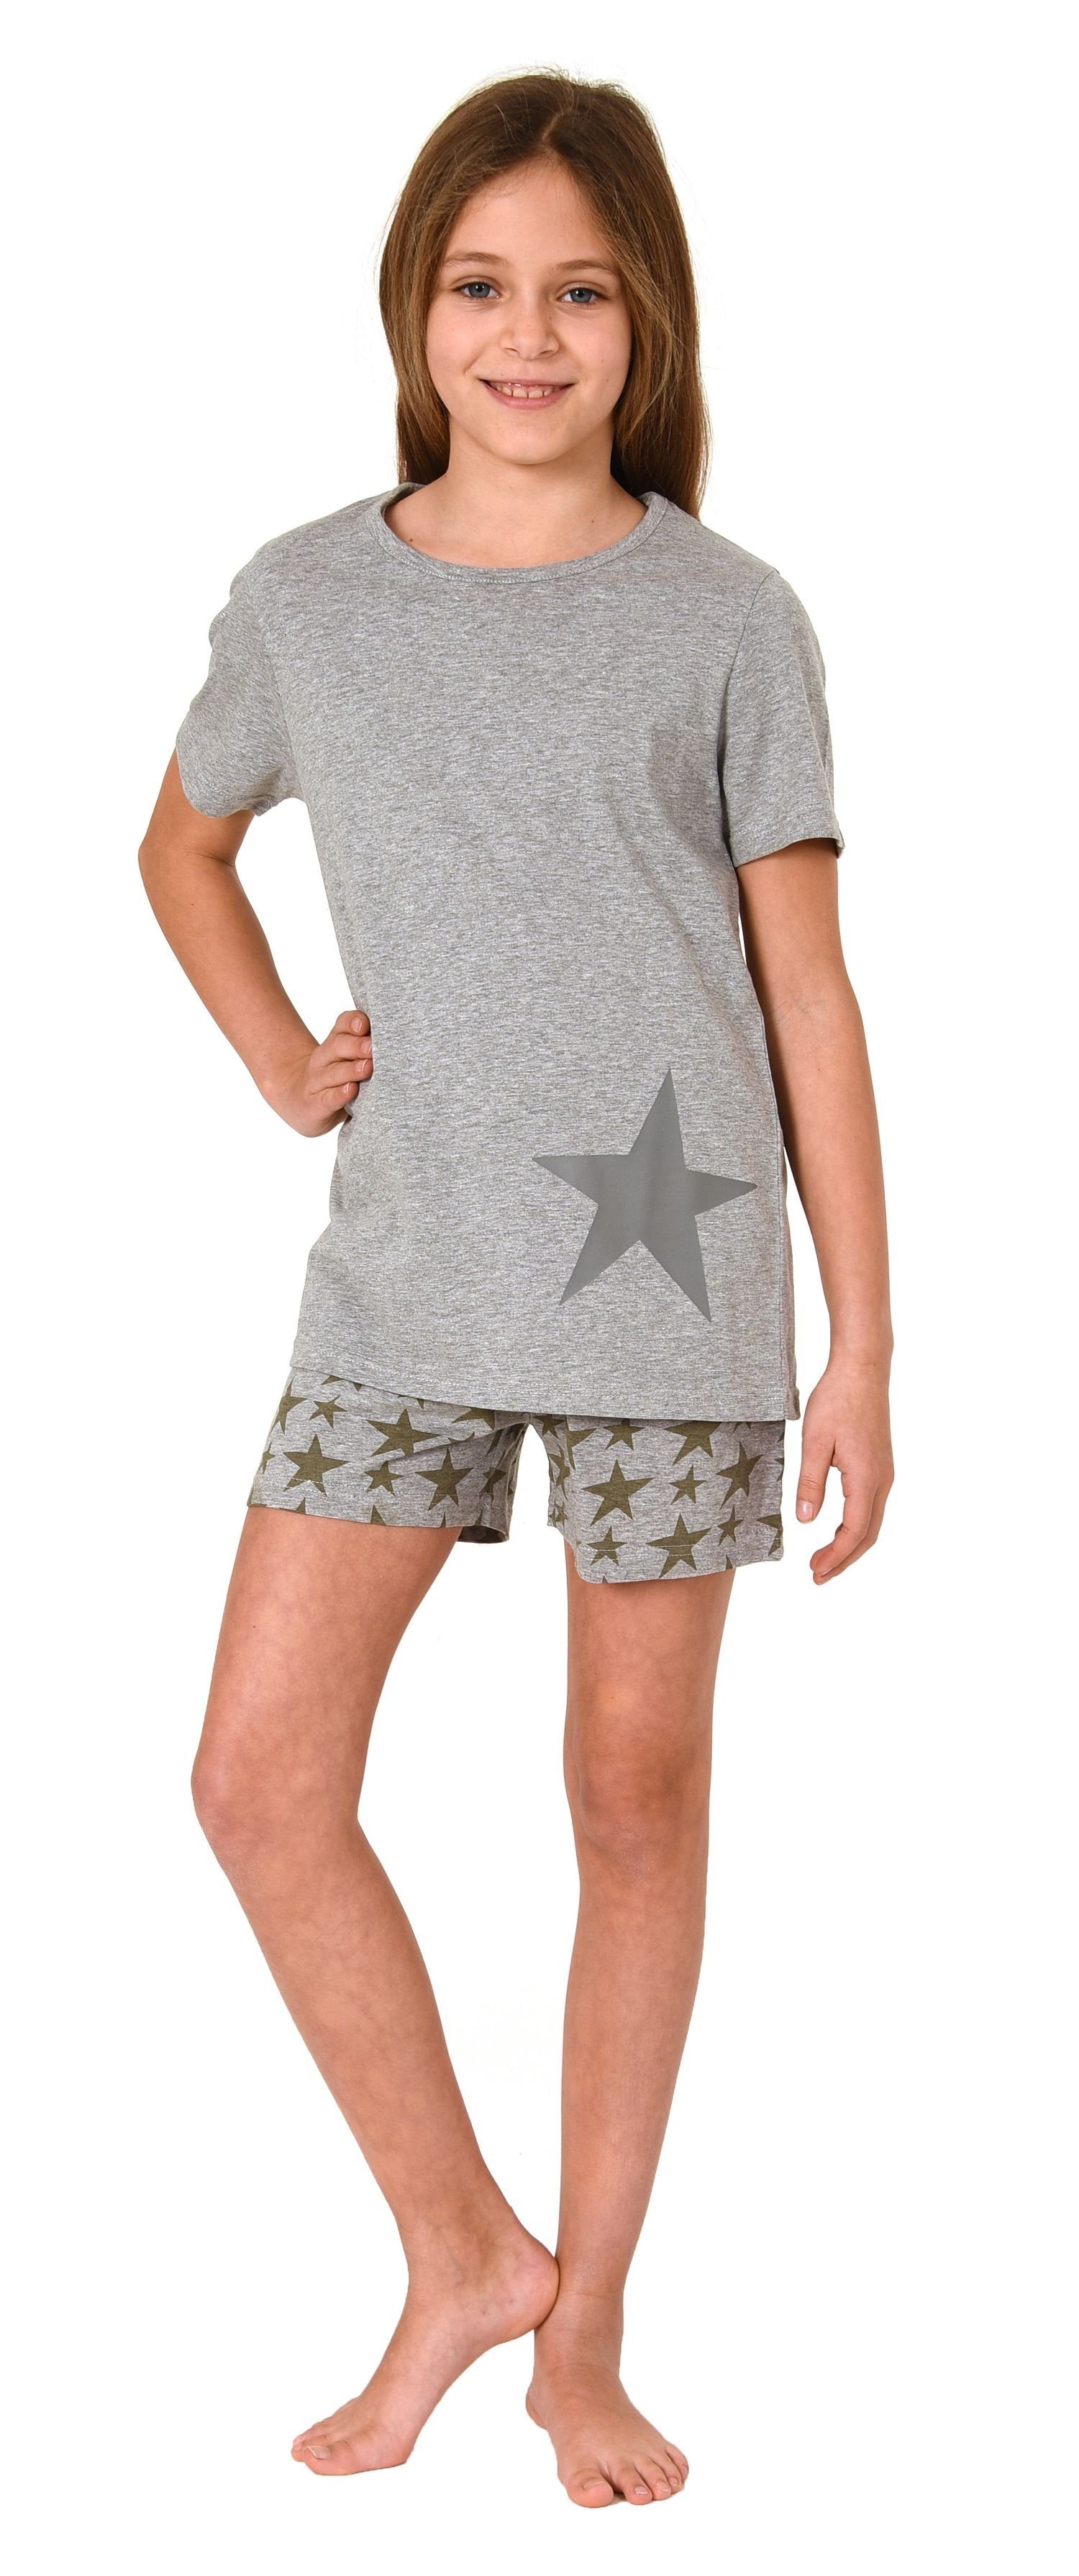 in Mädchen Wunderschöner Normann Shorty, kurzarm grau Pyjama Sterne-Optik Schlafanzug